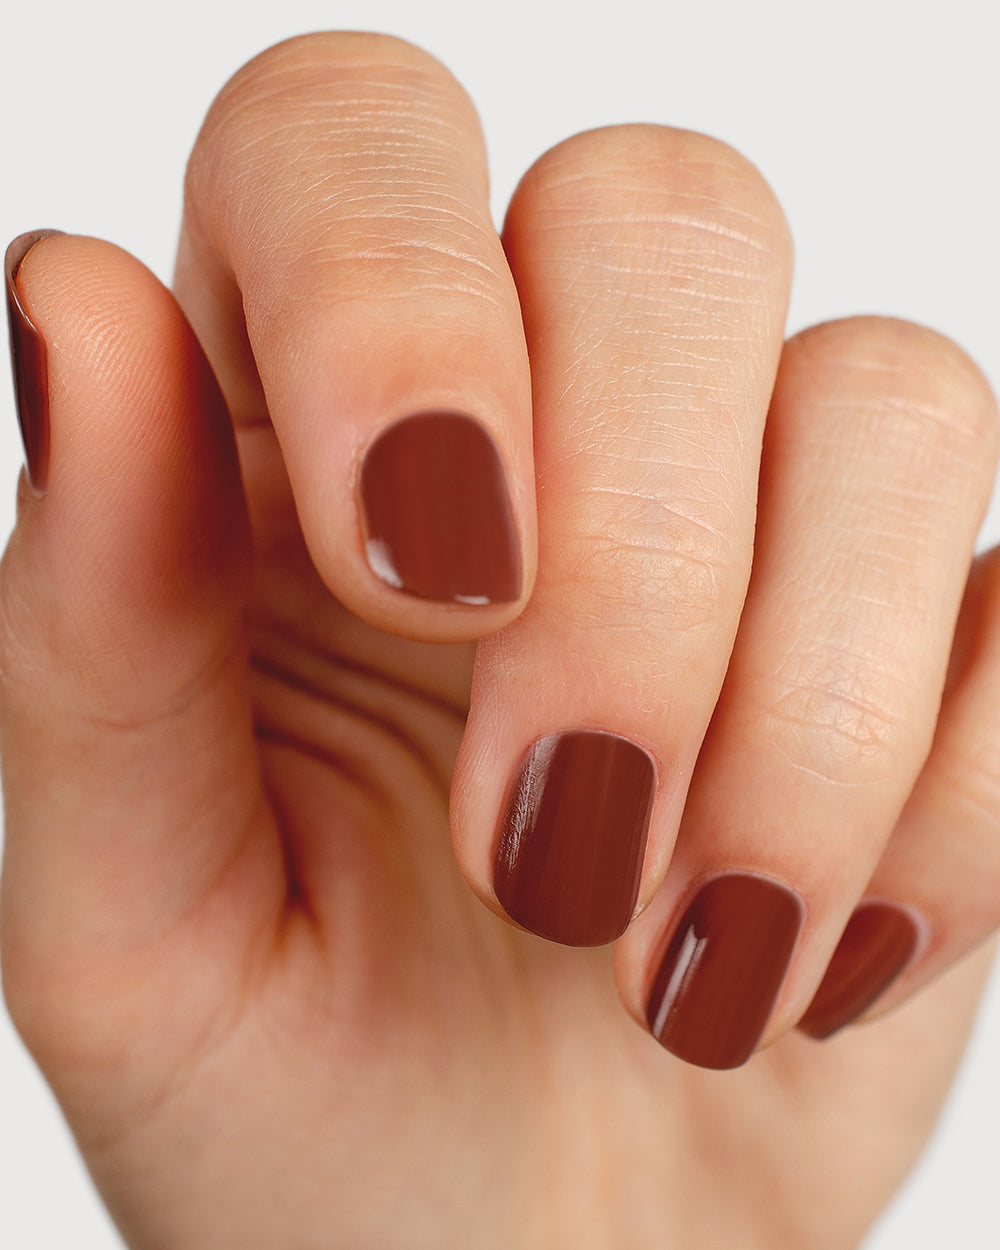 brown nail polish hand swatch on fair skin tone